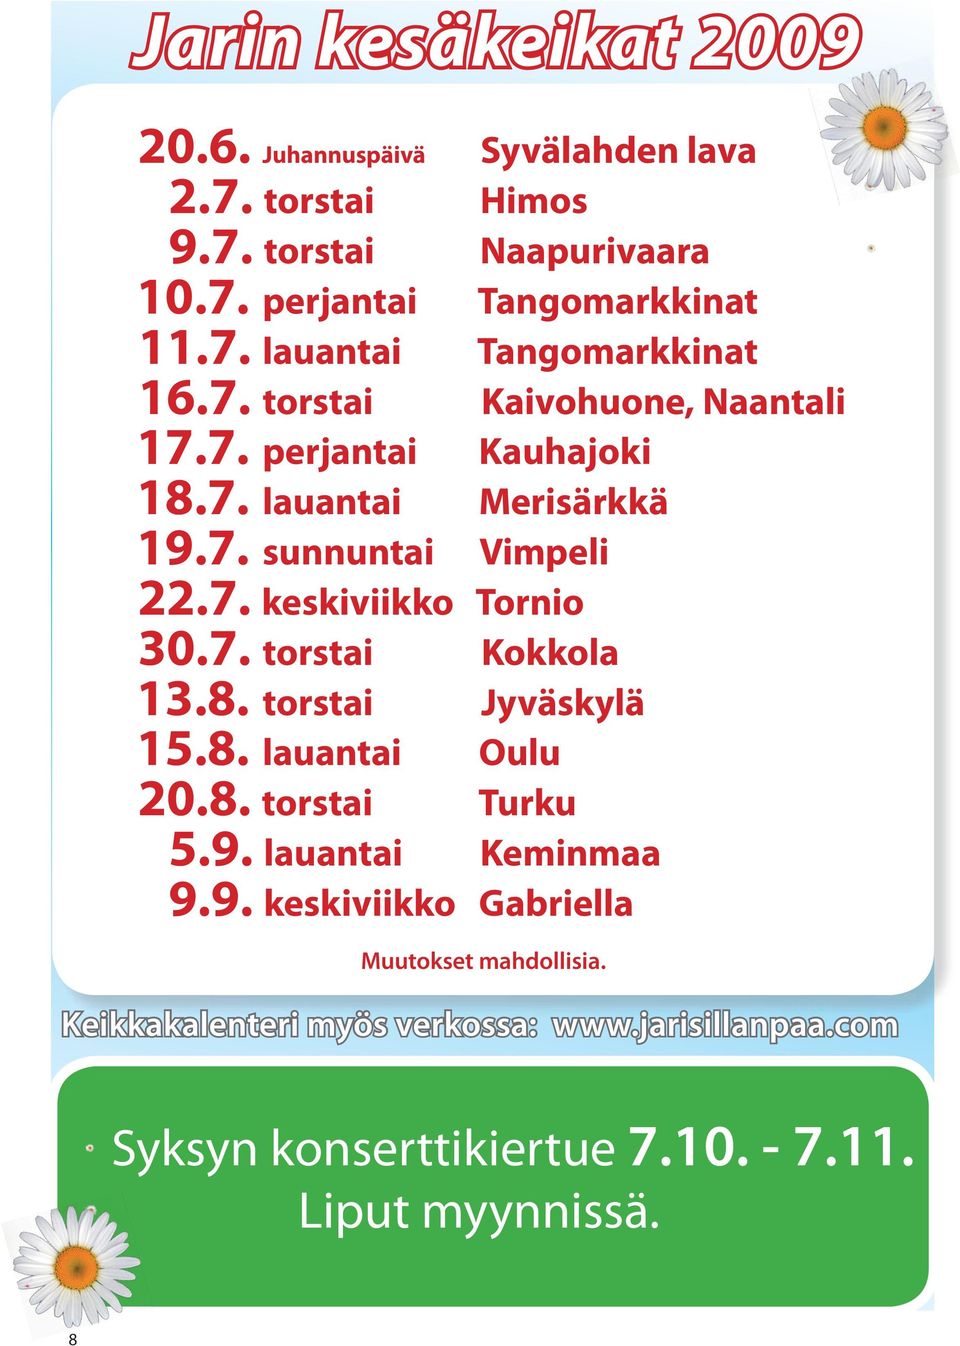 8. torstai Jyväskylä 15.8. lauantai Oulu 20.8. torstai Turku 5.9. lauantai Keminmaa 9.9. keskiviikko Gabriella Muutokset mahdollisia.